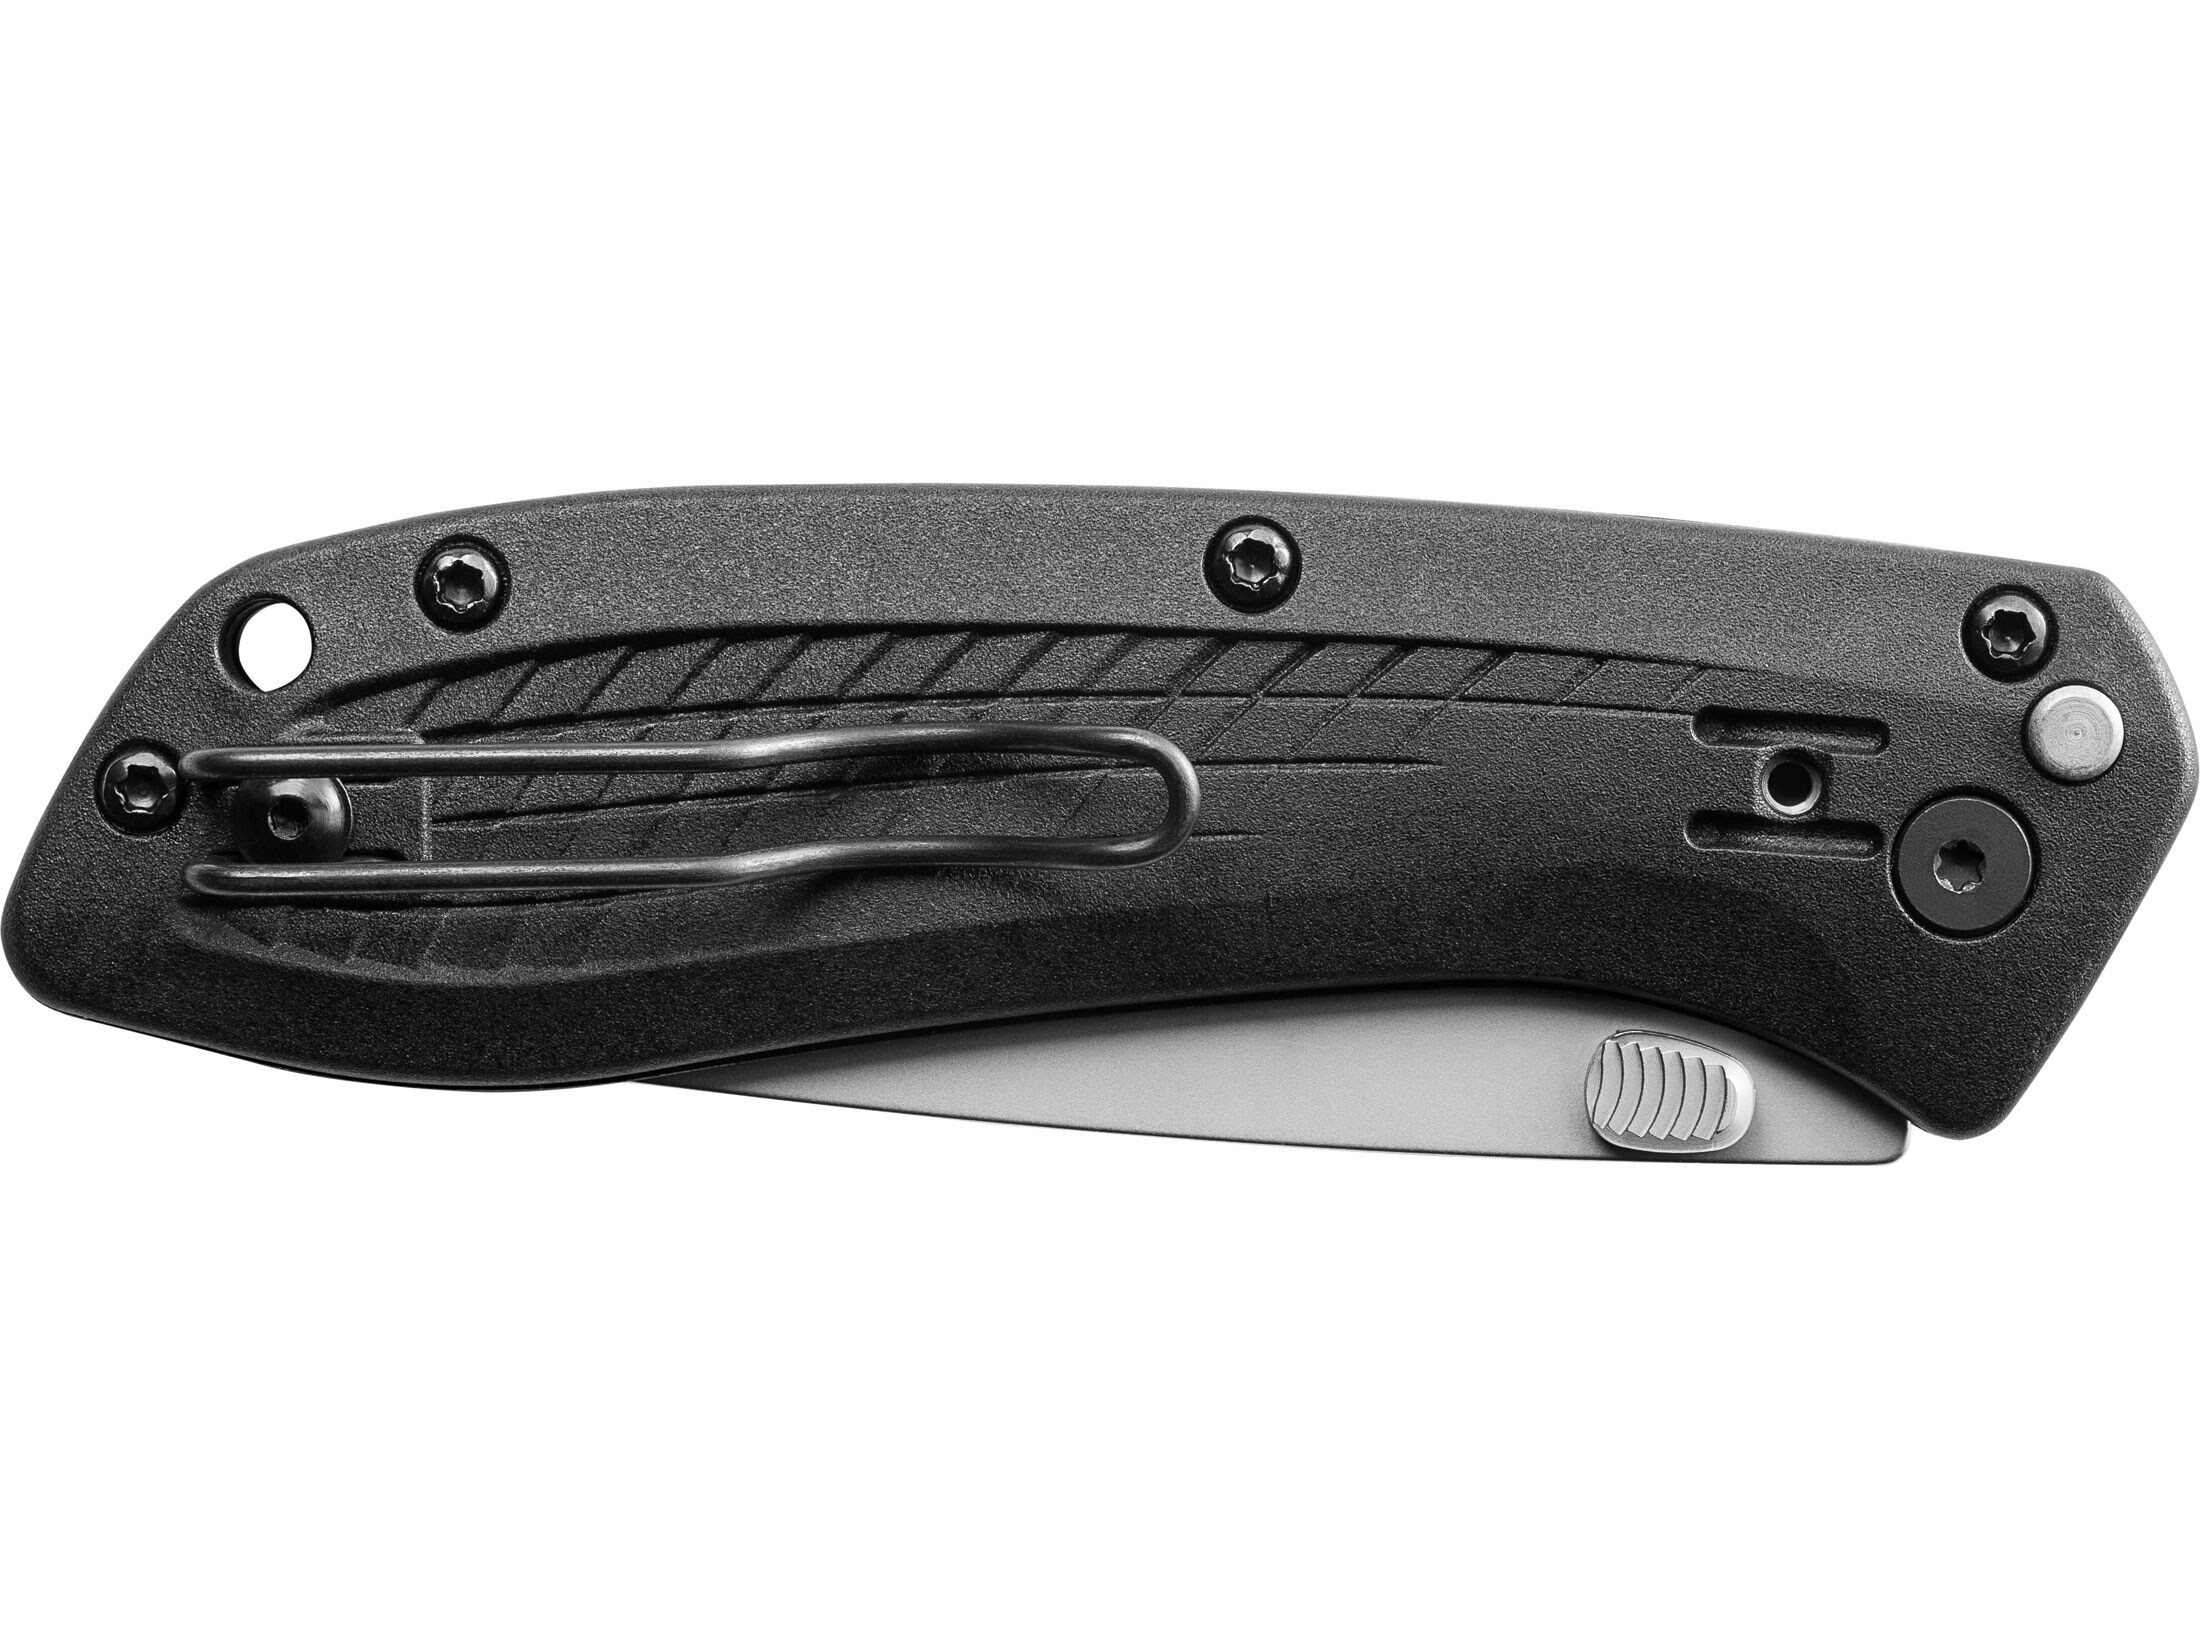 Gerber US-ASSIST Folding Pocket Knife 3″ Drop Point 420HC Steel Blade Glass Filled Nylon Handle For Sale